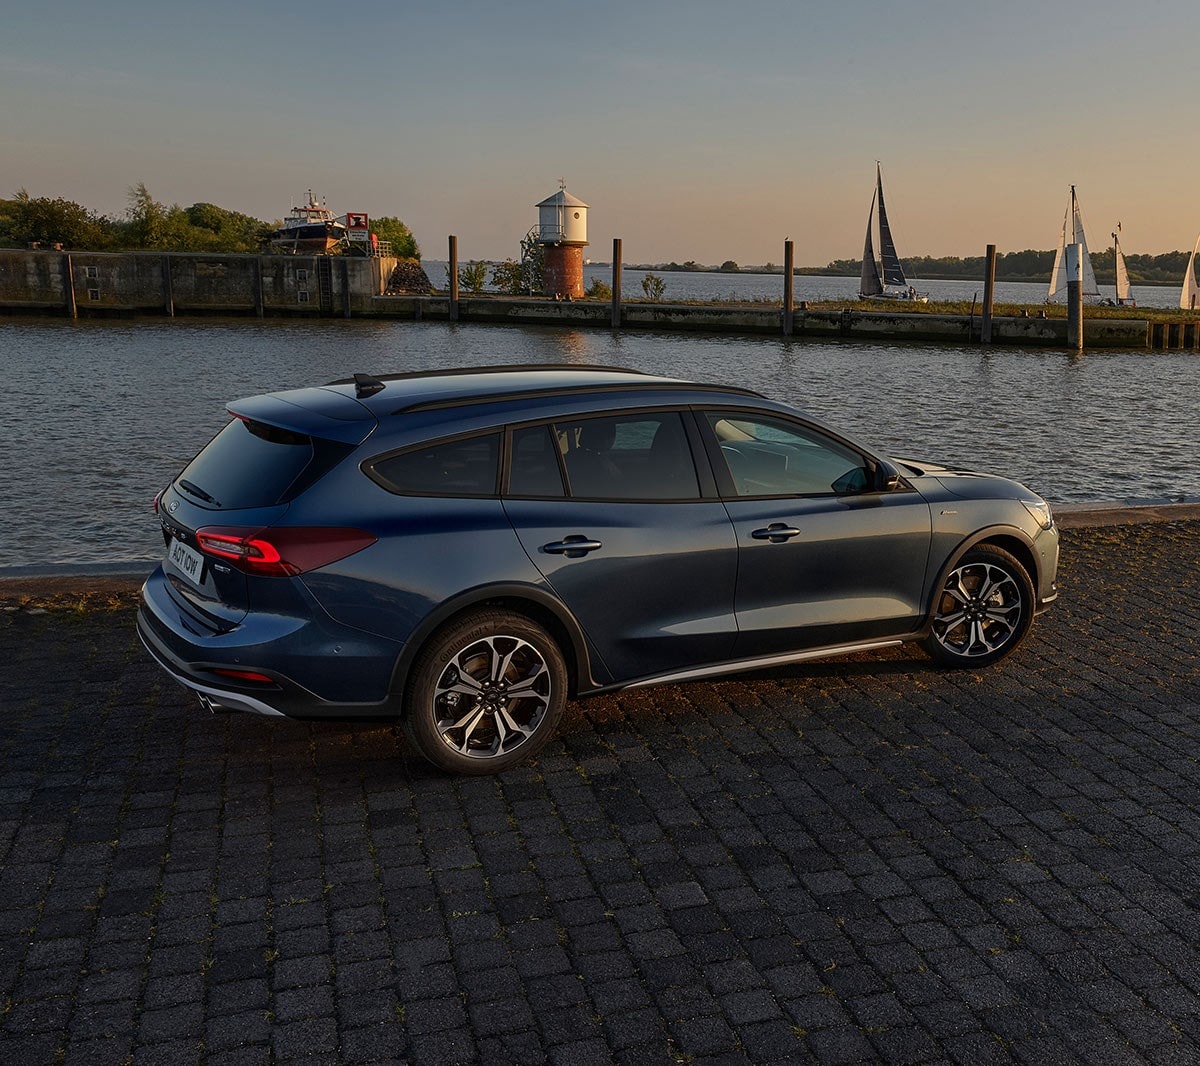 Ford Focus in Blau. Dreiviertel-Heckansicht, vor einem See im Sonnenuntergang parkend.